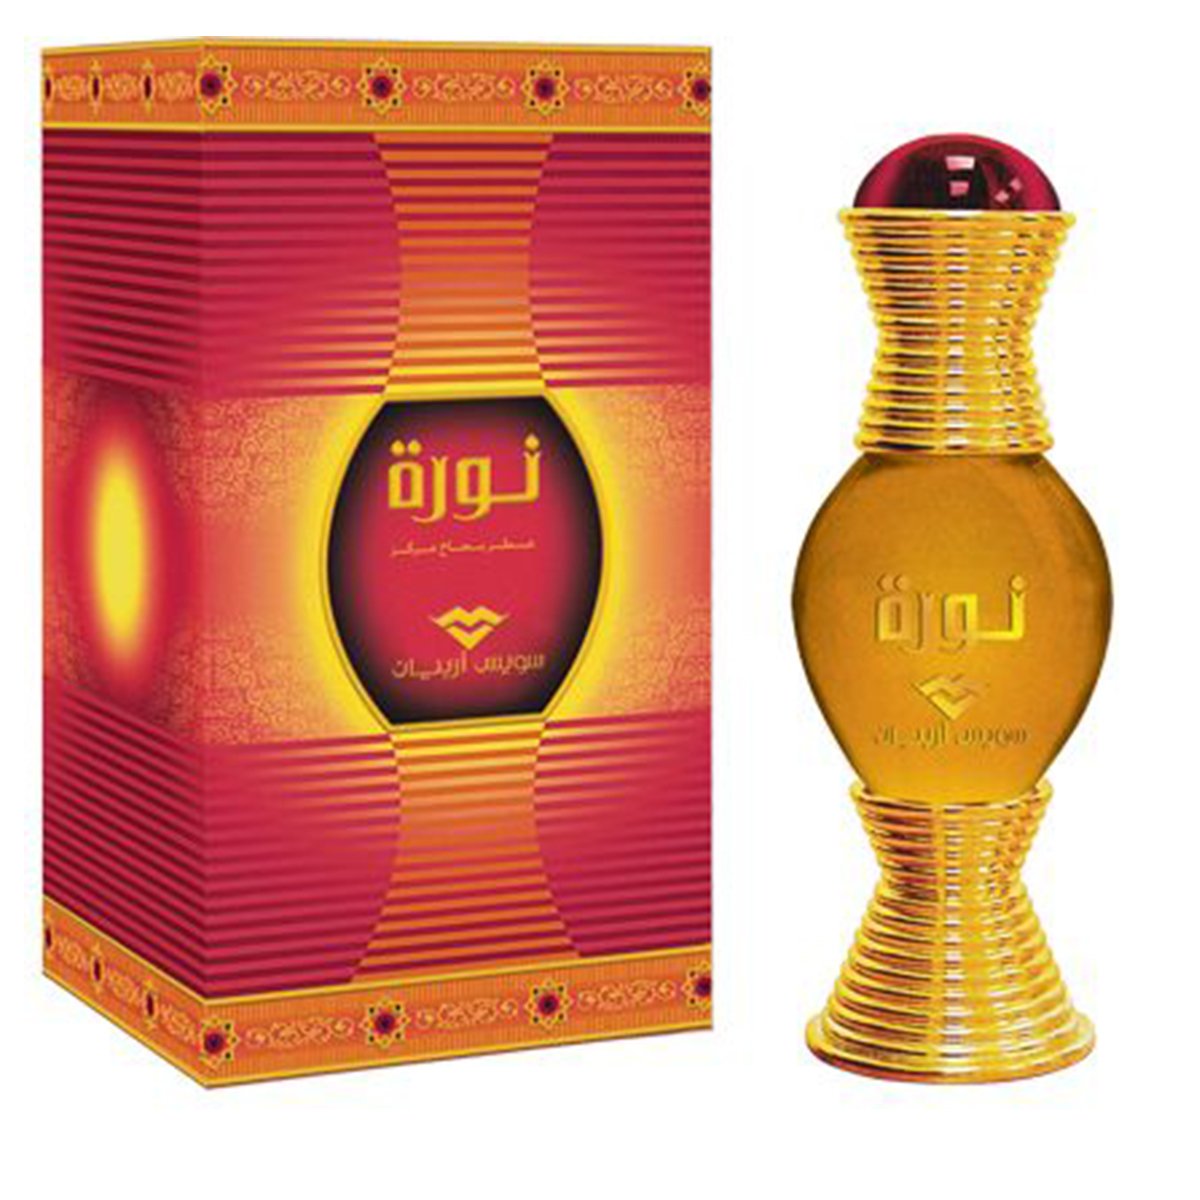 Noora Parfum Oil 20ml Swiss Arabian - Smile Europe Wholesale 